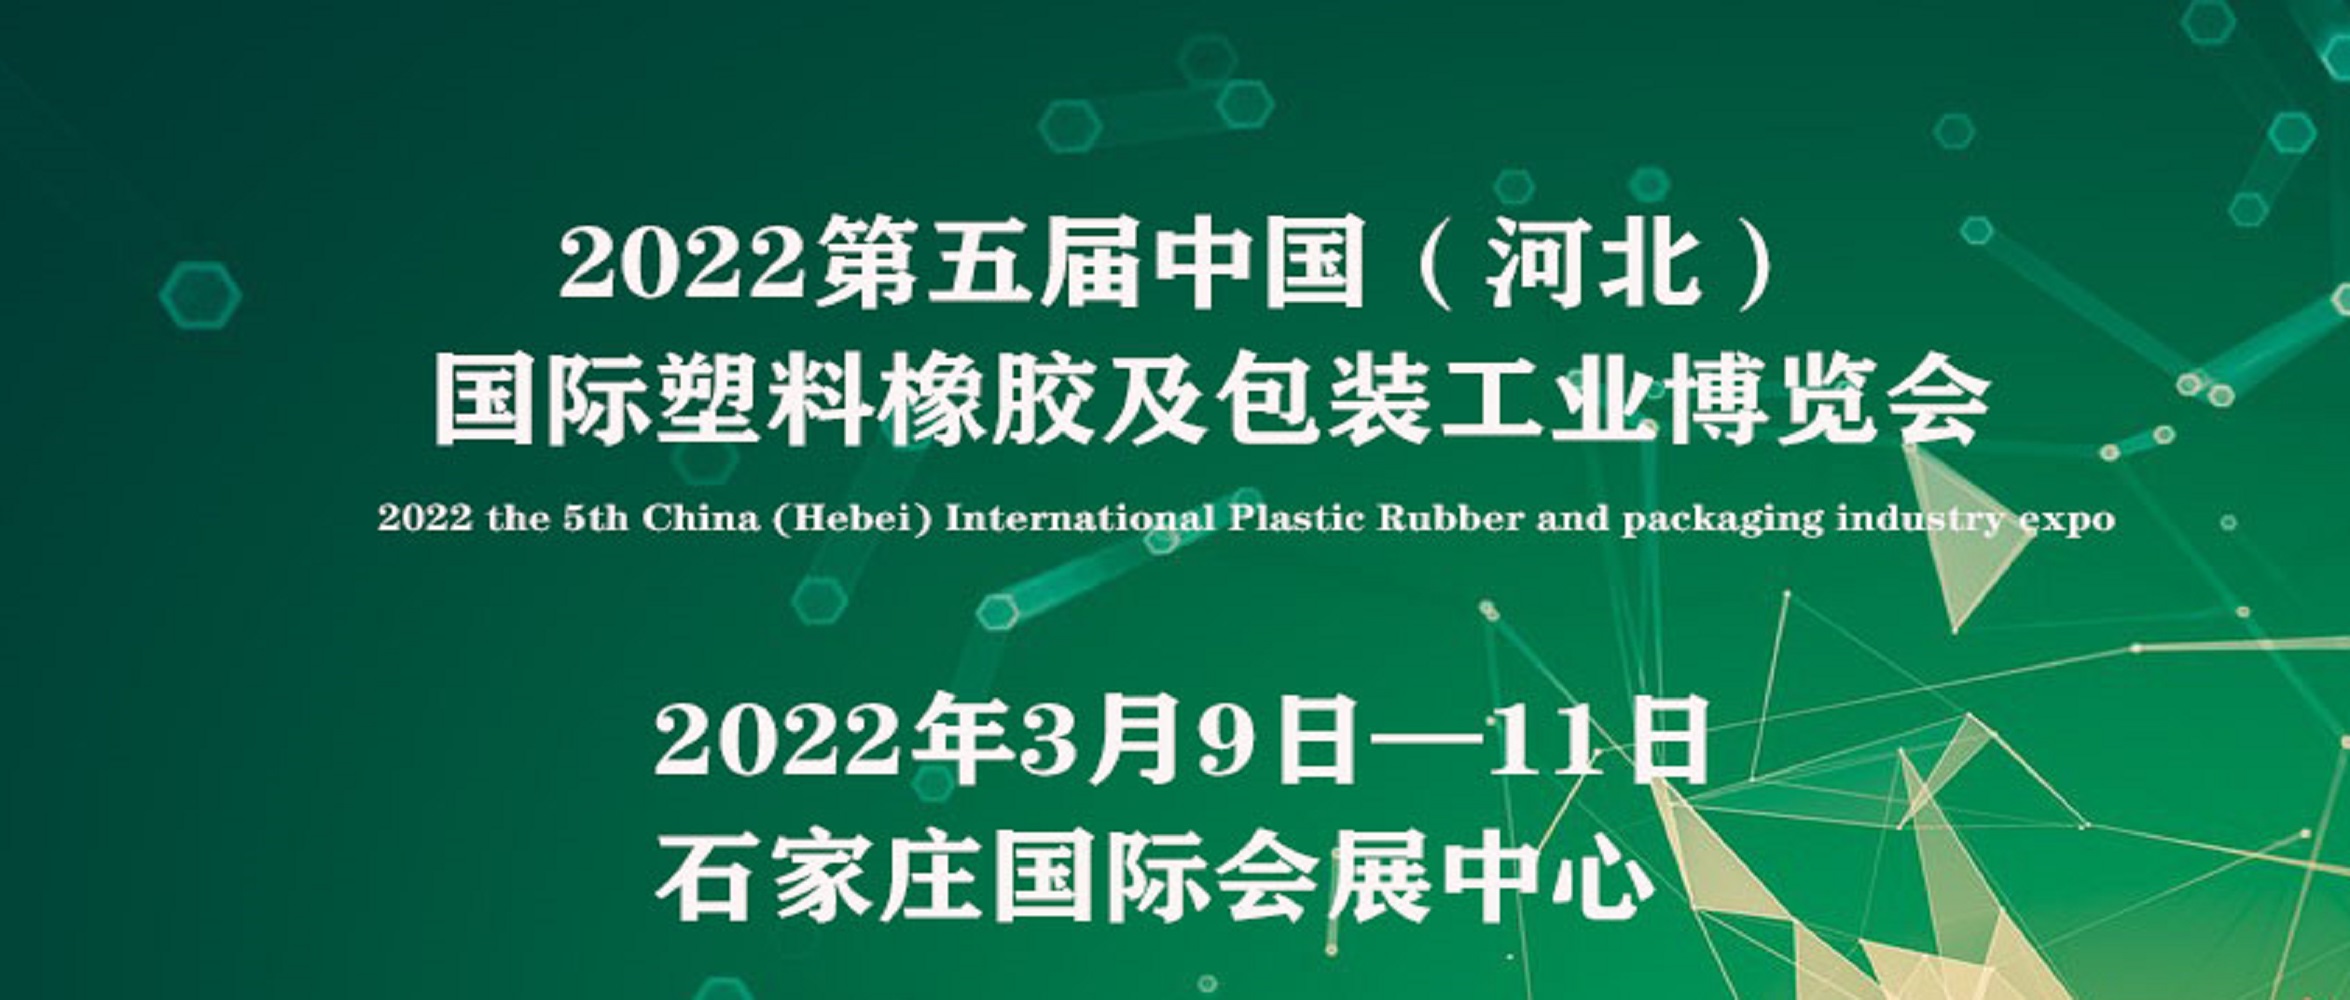 2022中国（河北）国际塑料橡胶及包装工业博览会